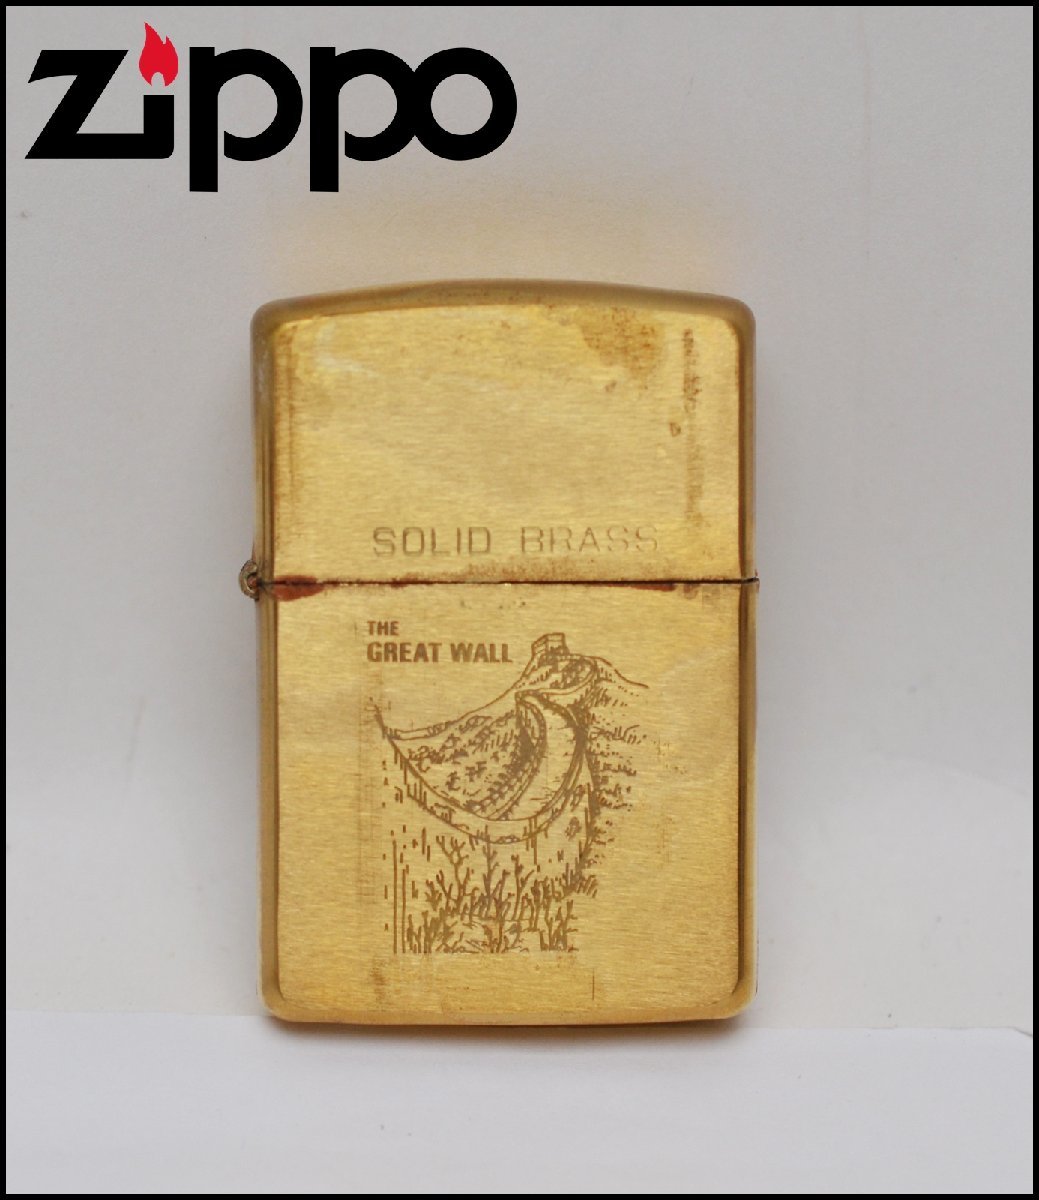 ZIPPO SOLID BRASS THE GREAT WALL 1932 1989 オイルライター ゴールド 火花のみ確認済 ジッポ 万里の長城 ソリッドブラス U.S.A.製 真鍮_画像1